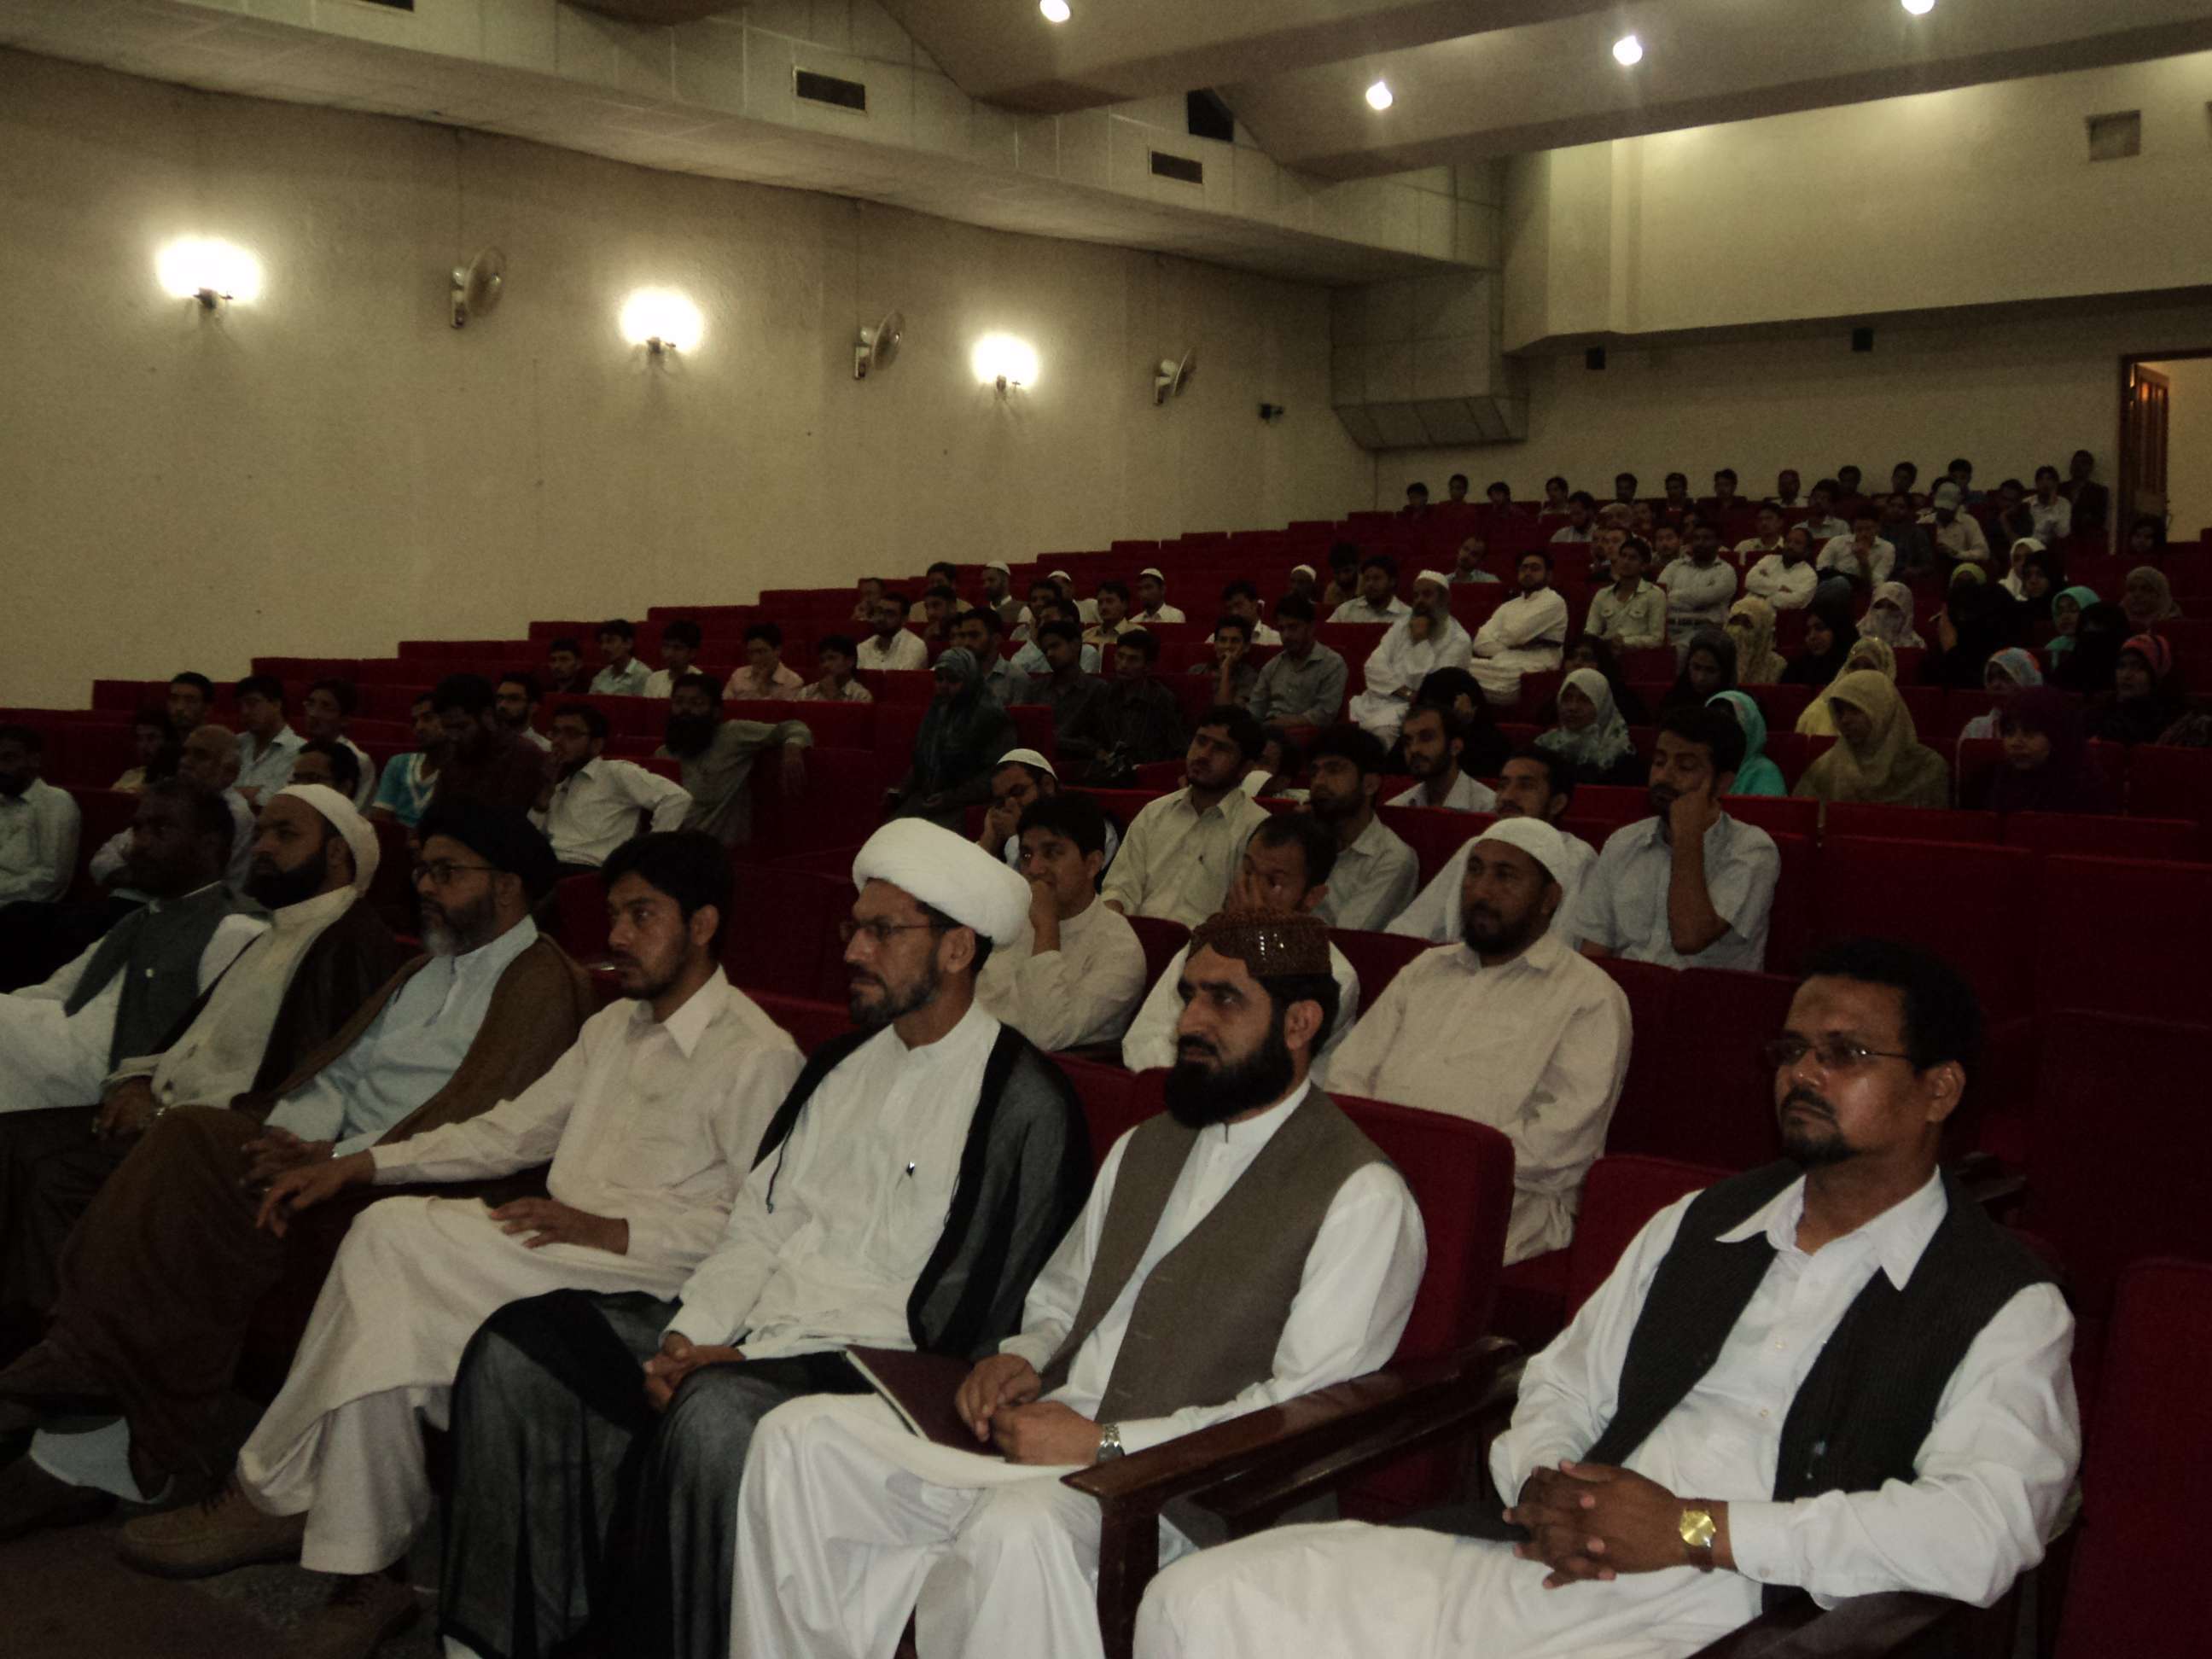 کنفرانس وحدت اسلامی با عنوان "بیداری امت اسلامی و چالشهای فرارو"در دانشگاه کراچی